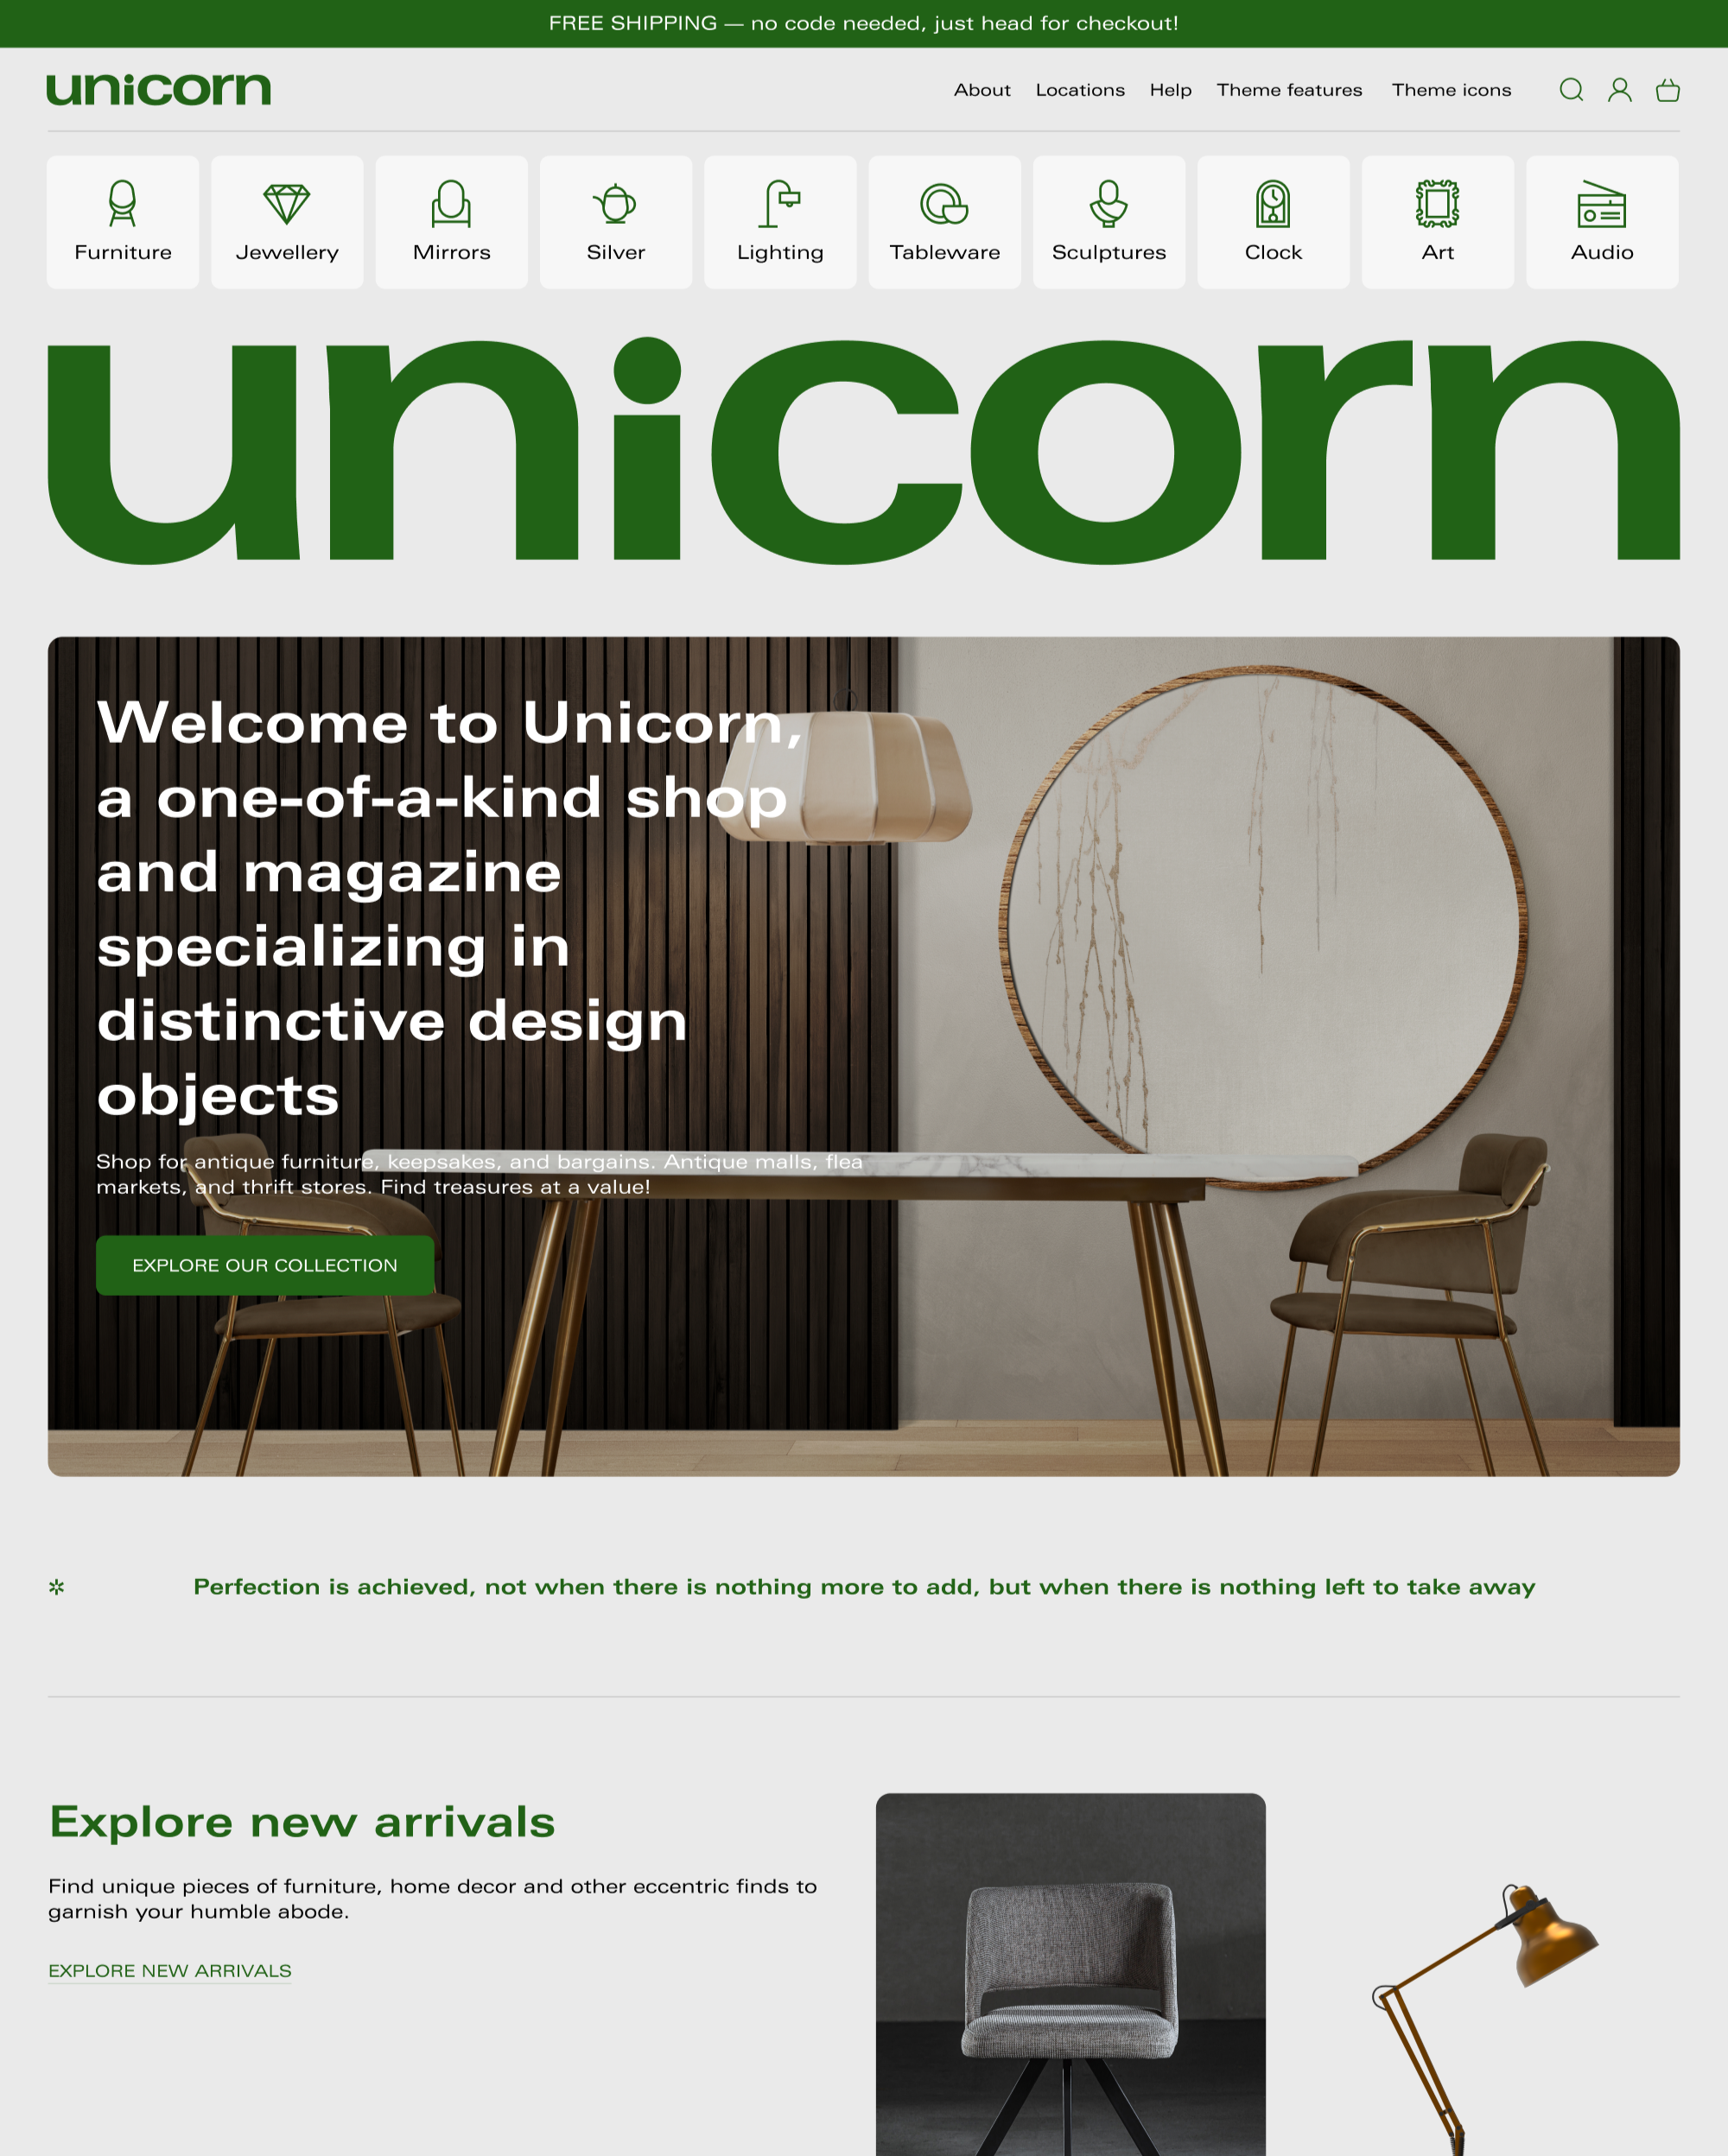 Vista previa de la versión de escritorio de Unicorn en el estilo "Valuable"